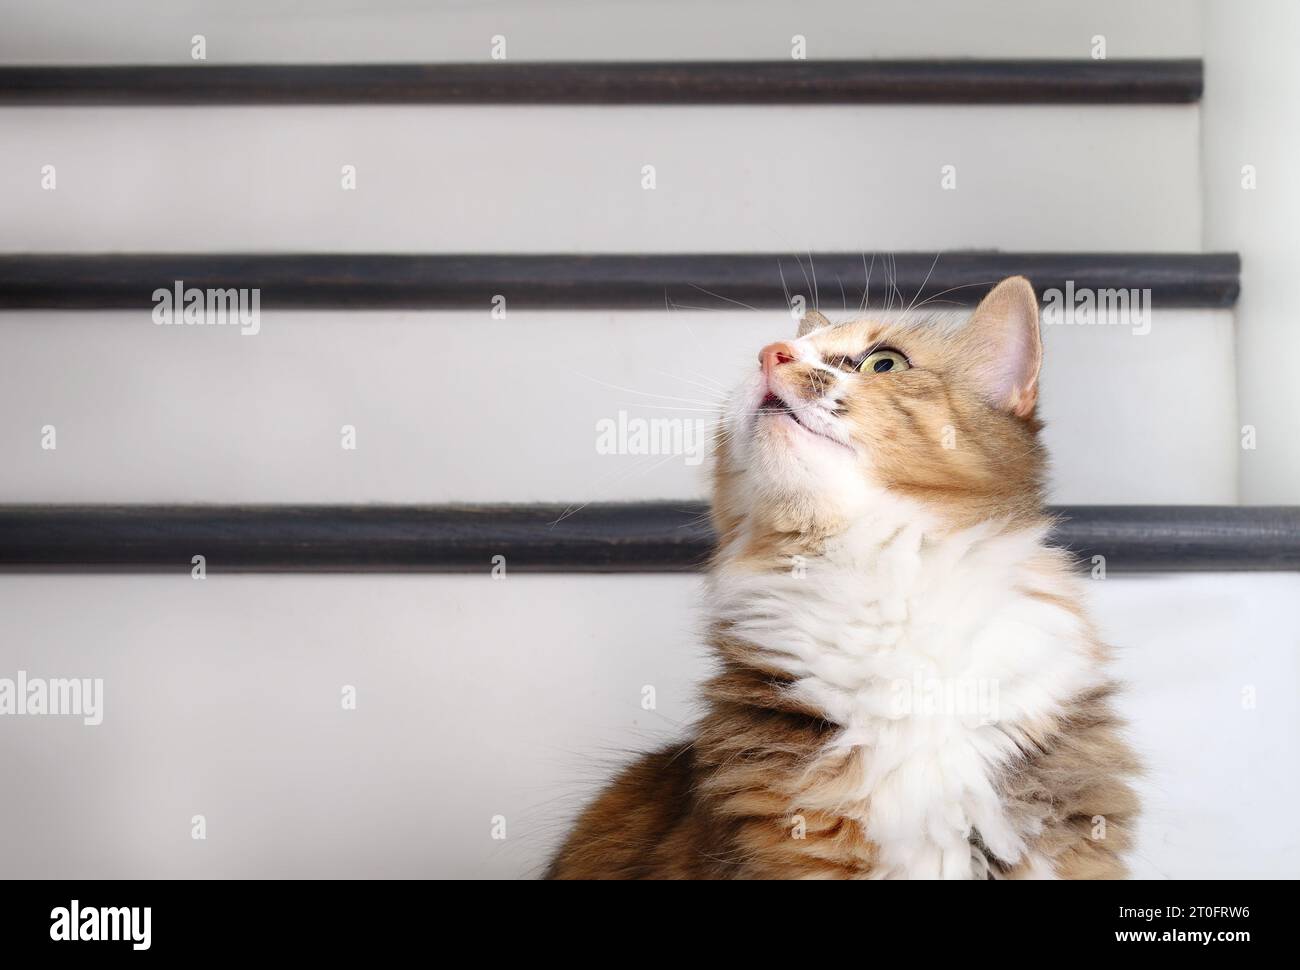 Neugierige Katze, die etwas intensiv ansieht. Flauschiges Calico-Kätzchen mit langen weißen Barthaaren, die ein Spielzeug, eine Fliege oder ein paar Lichter anstarren, während sie auf einem Stab sitzen Stockfoto